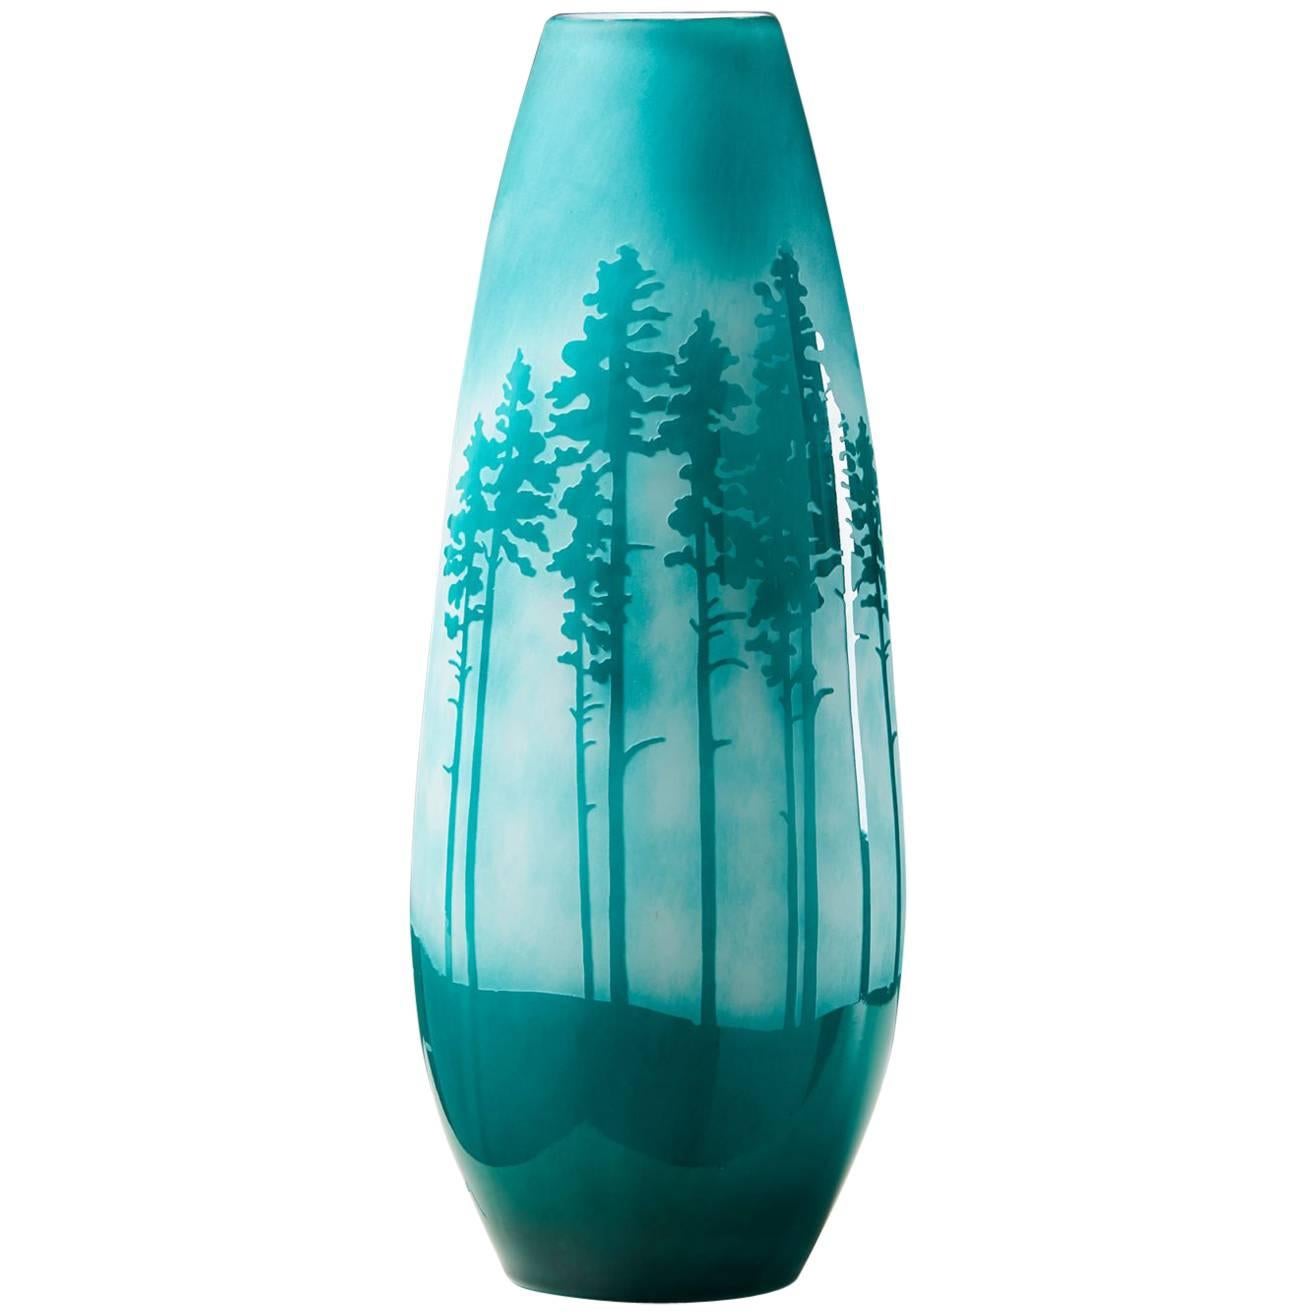 Vase Designed by Sissi Westerberg for Reijmyre, Sweden, 2017